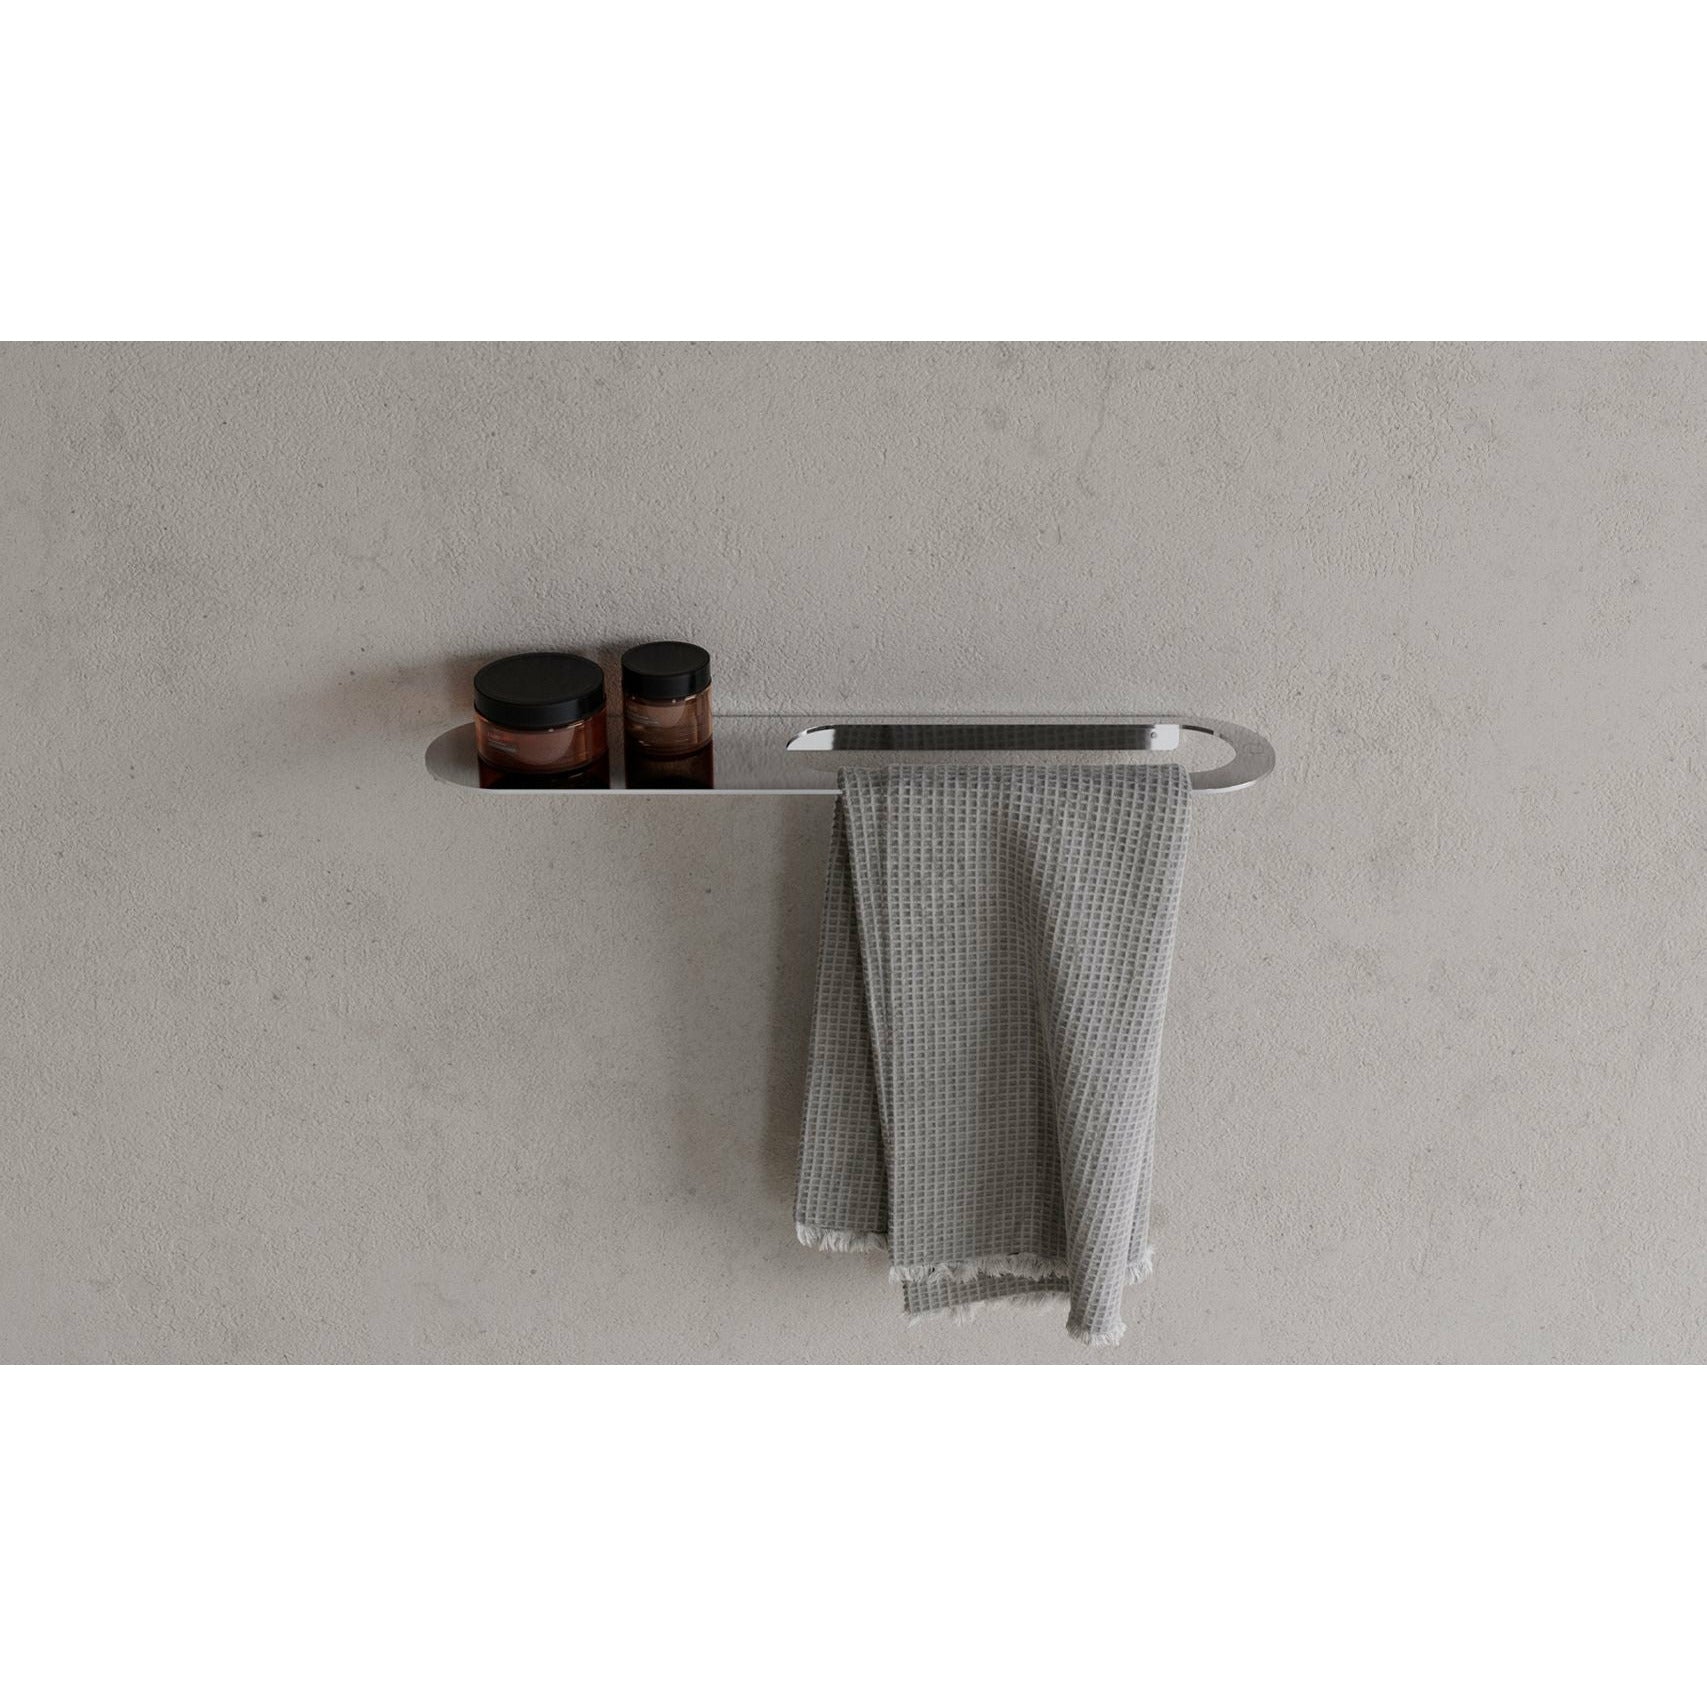 Copenhague Bath CB 100 porte-serviette avec étagère, chrome